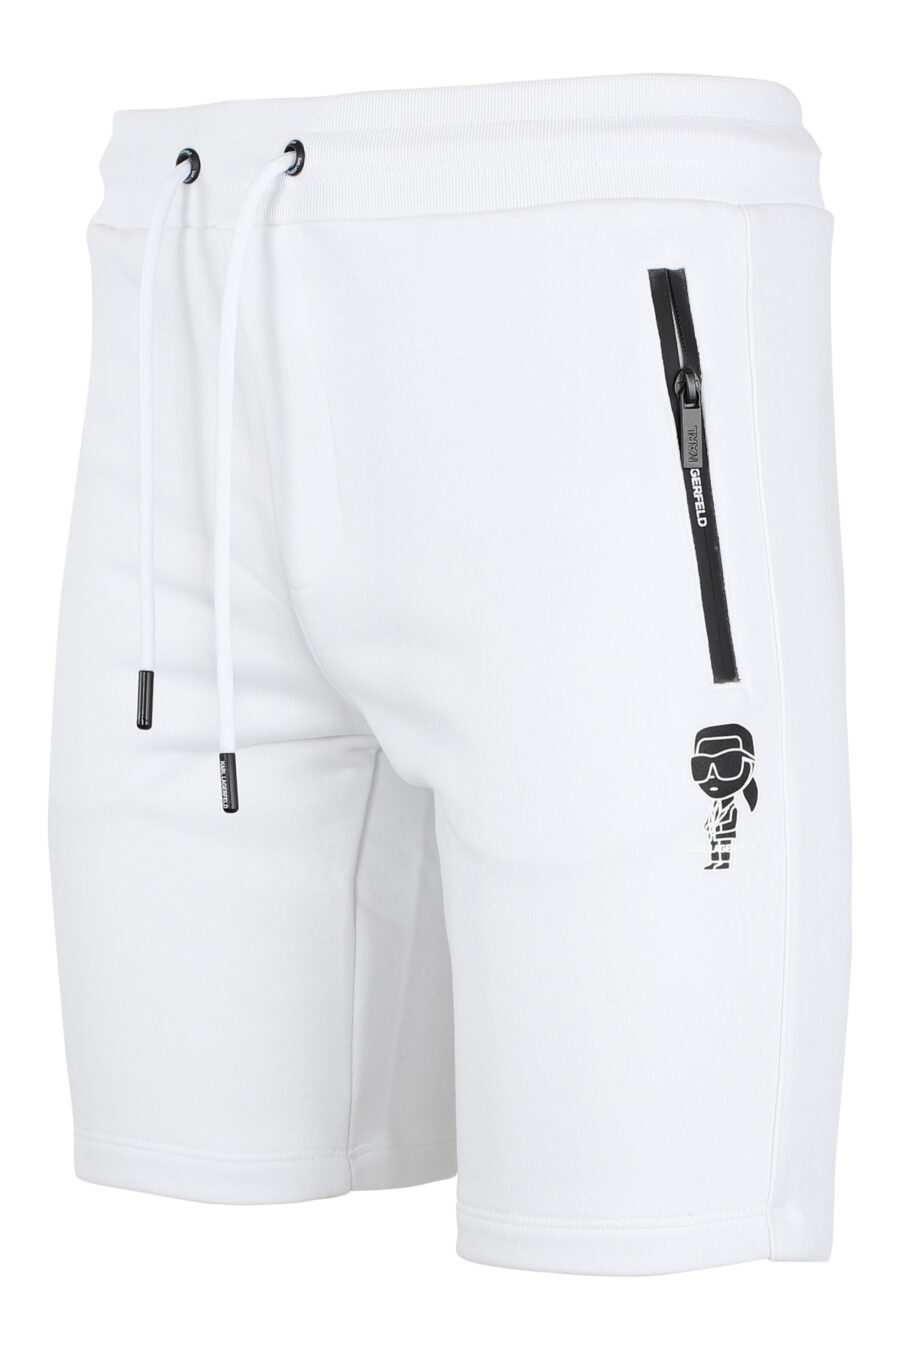 Pantalón de chándal blanco corto con minilogo "karl" en silueta negro - IMG 9515